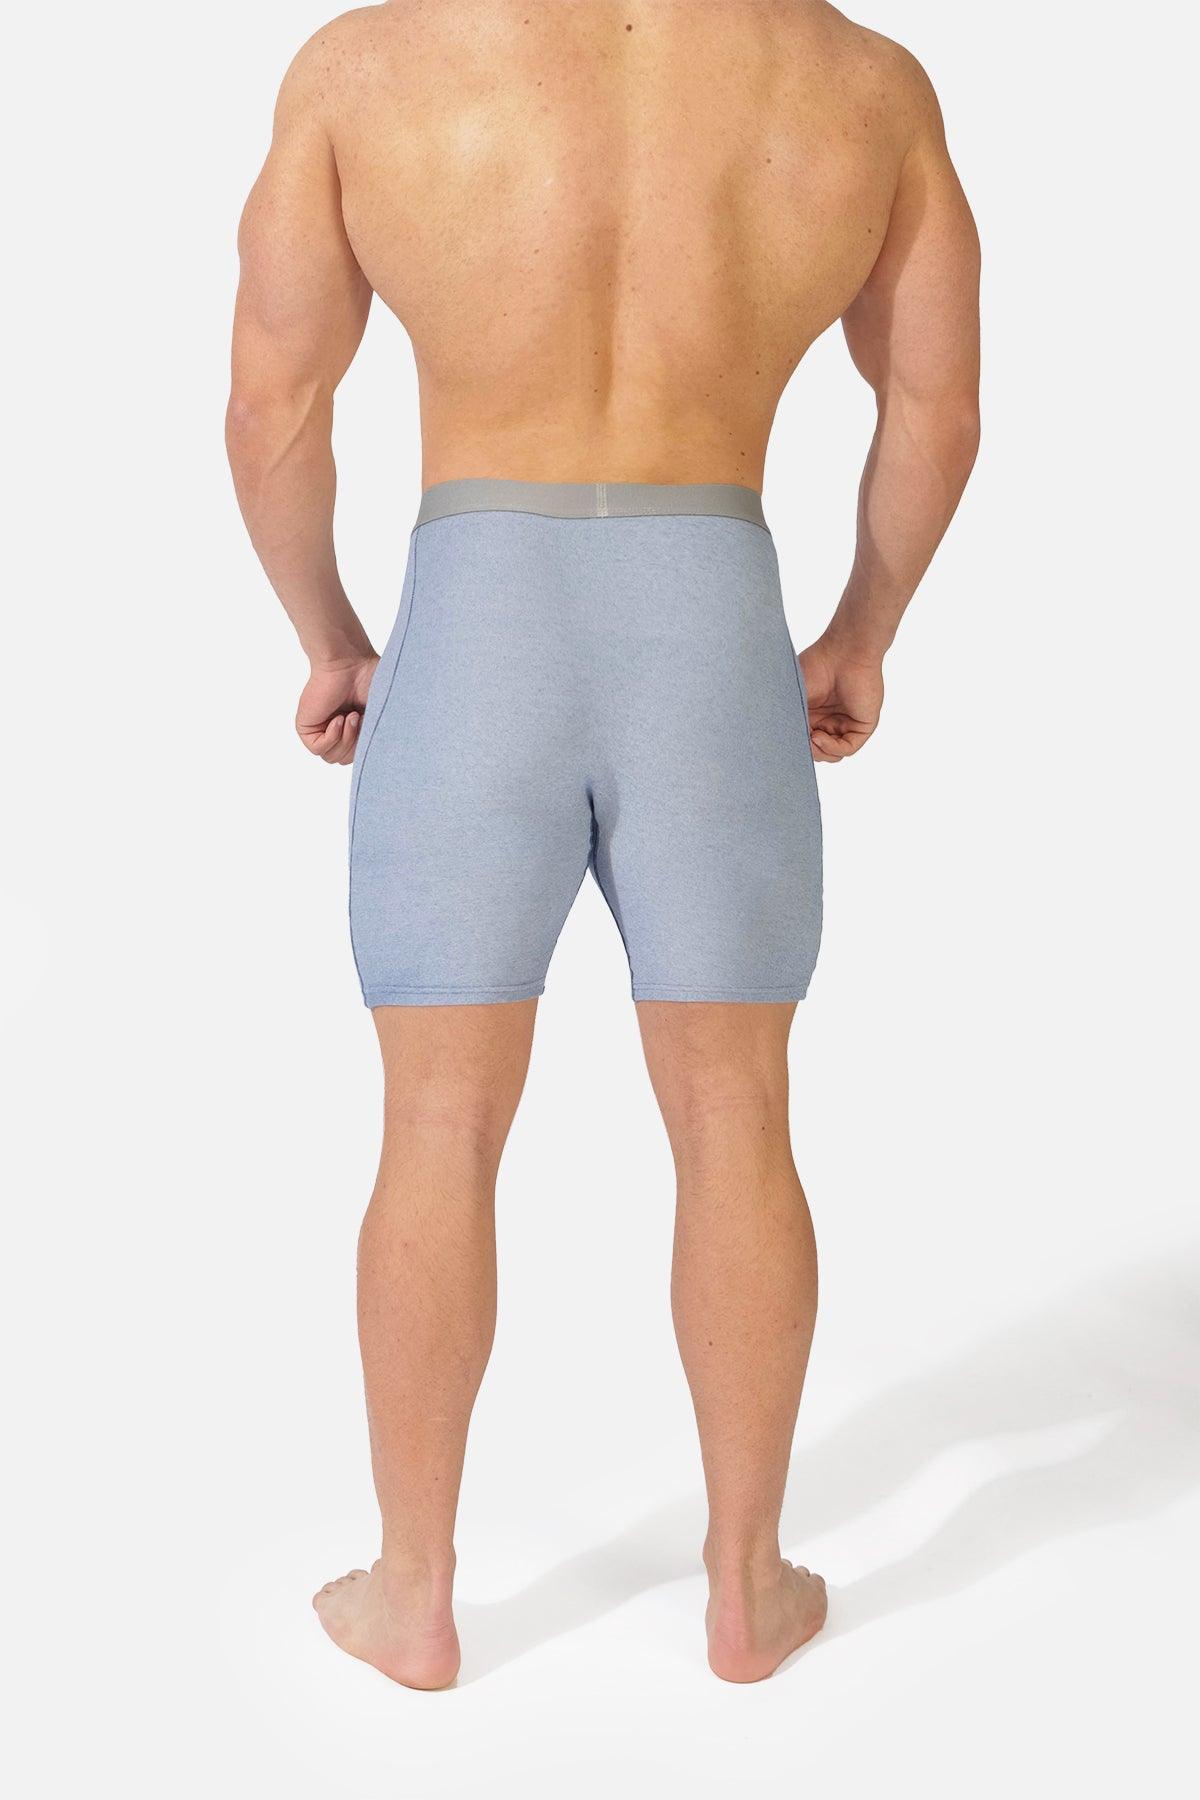 Men's Drawstring Loose Boxer Shorts (2/pack)